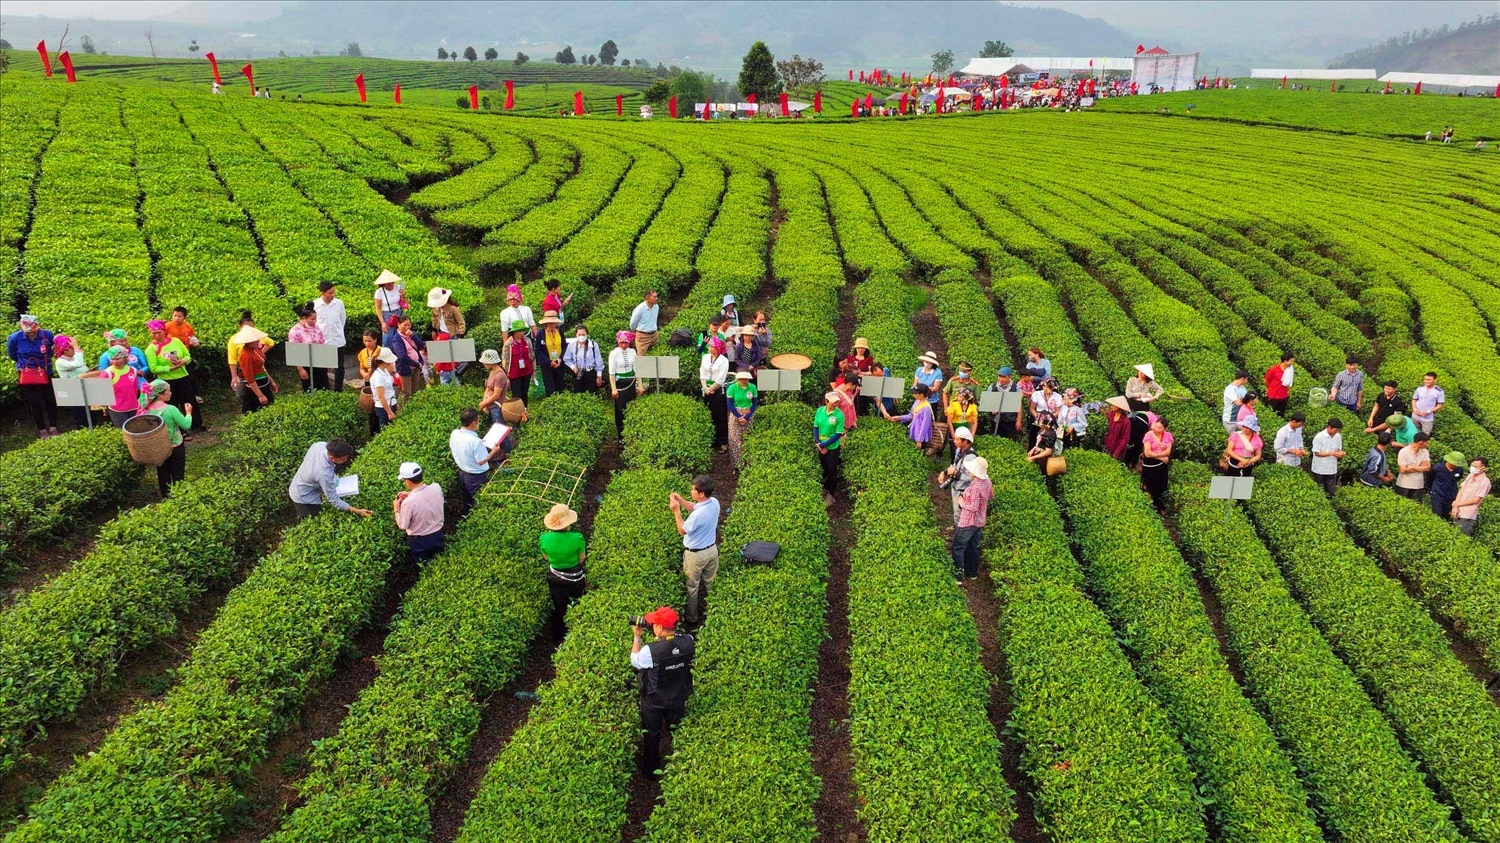 ตั้งแต่เช้าตรู่ผู้คนและนักท่องเที่ยวจำนวนมากรวมตัวกันในพื้นที่ชาของชุมชน Phuc Khoa เขต Tan Uyen เพื่อชมการเก็บชาและการแข่งขันติดดาวของเกษตรกร